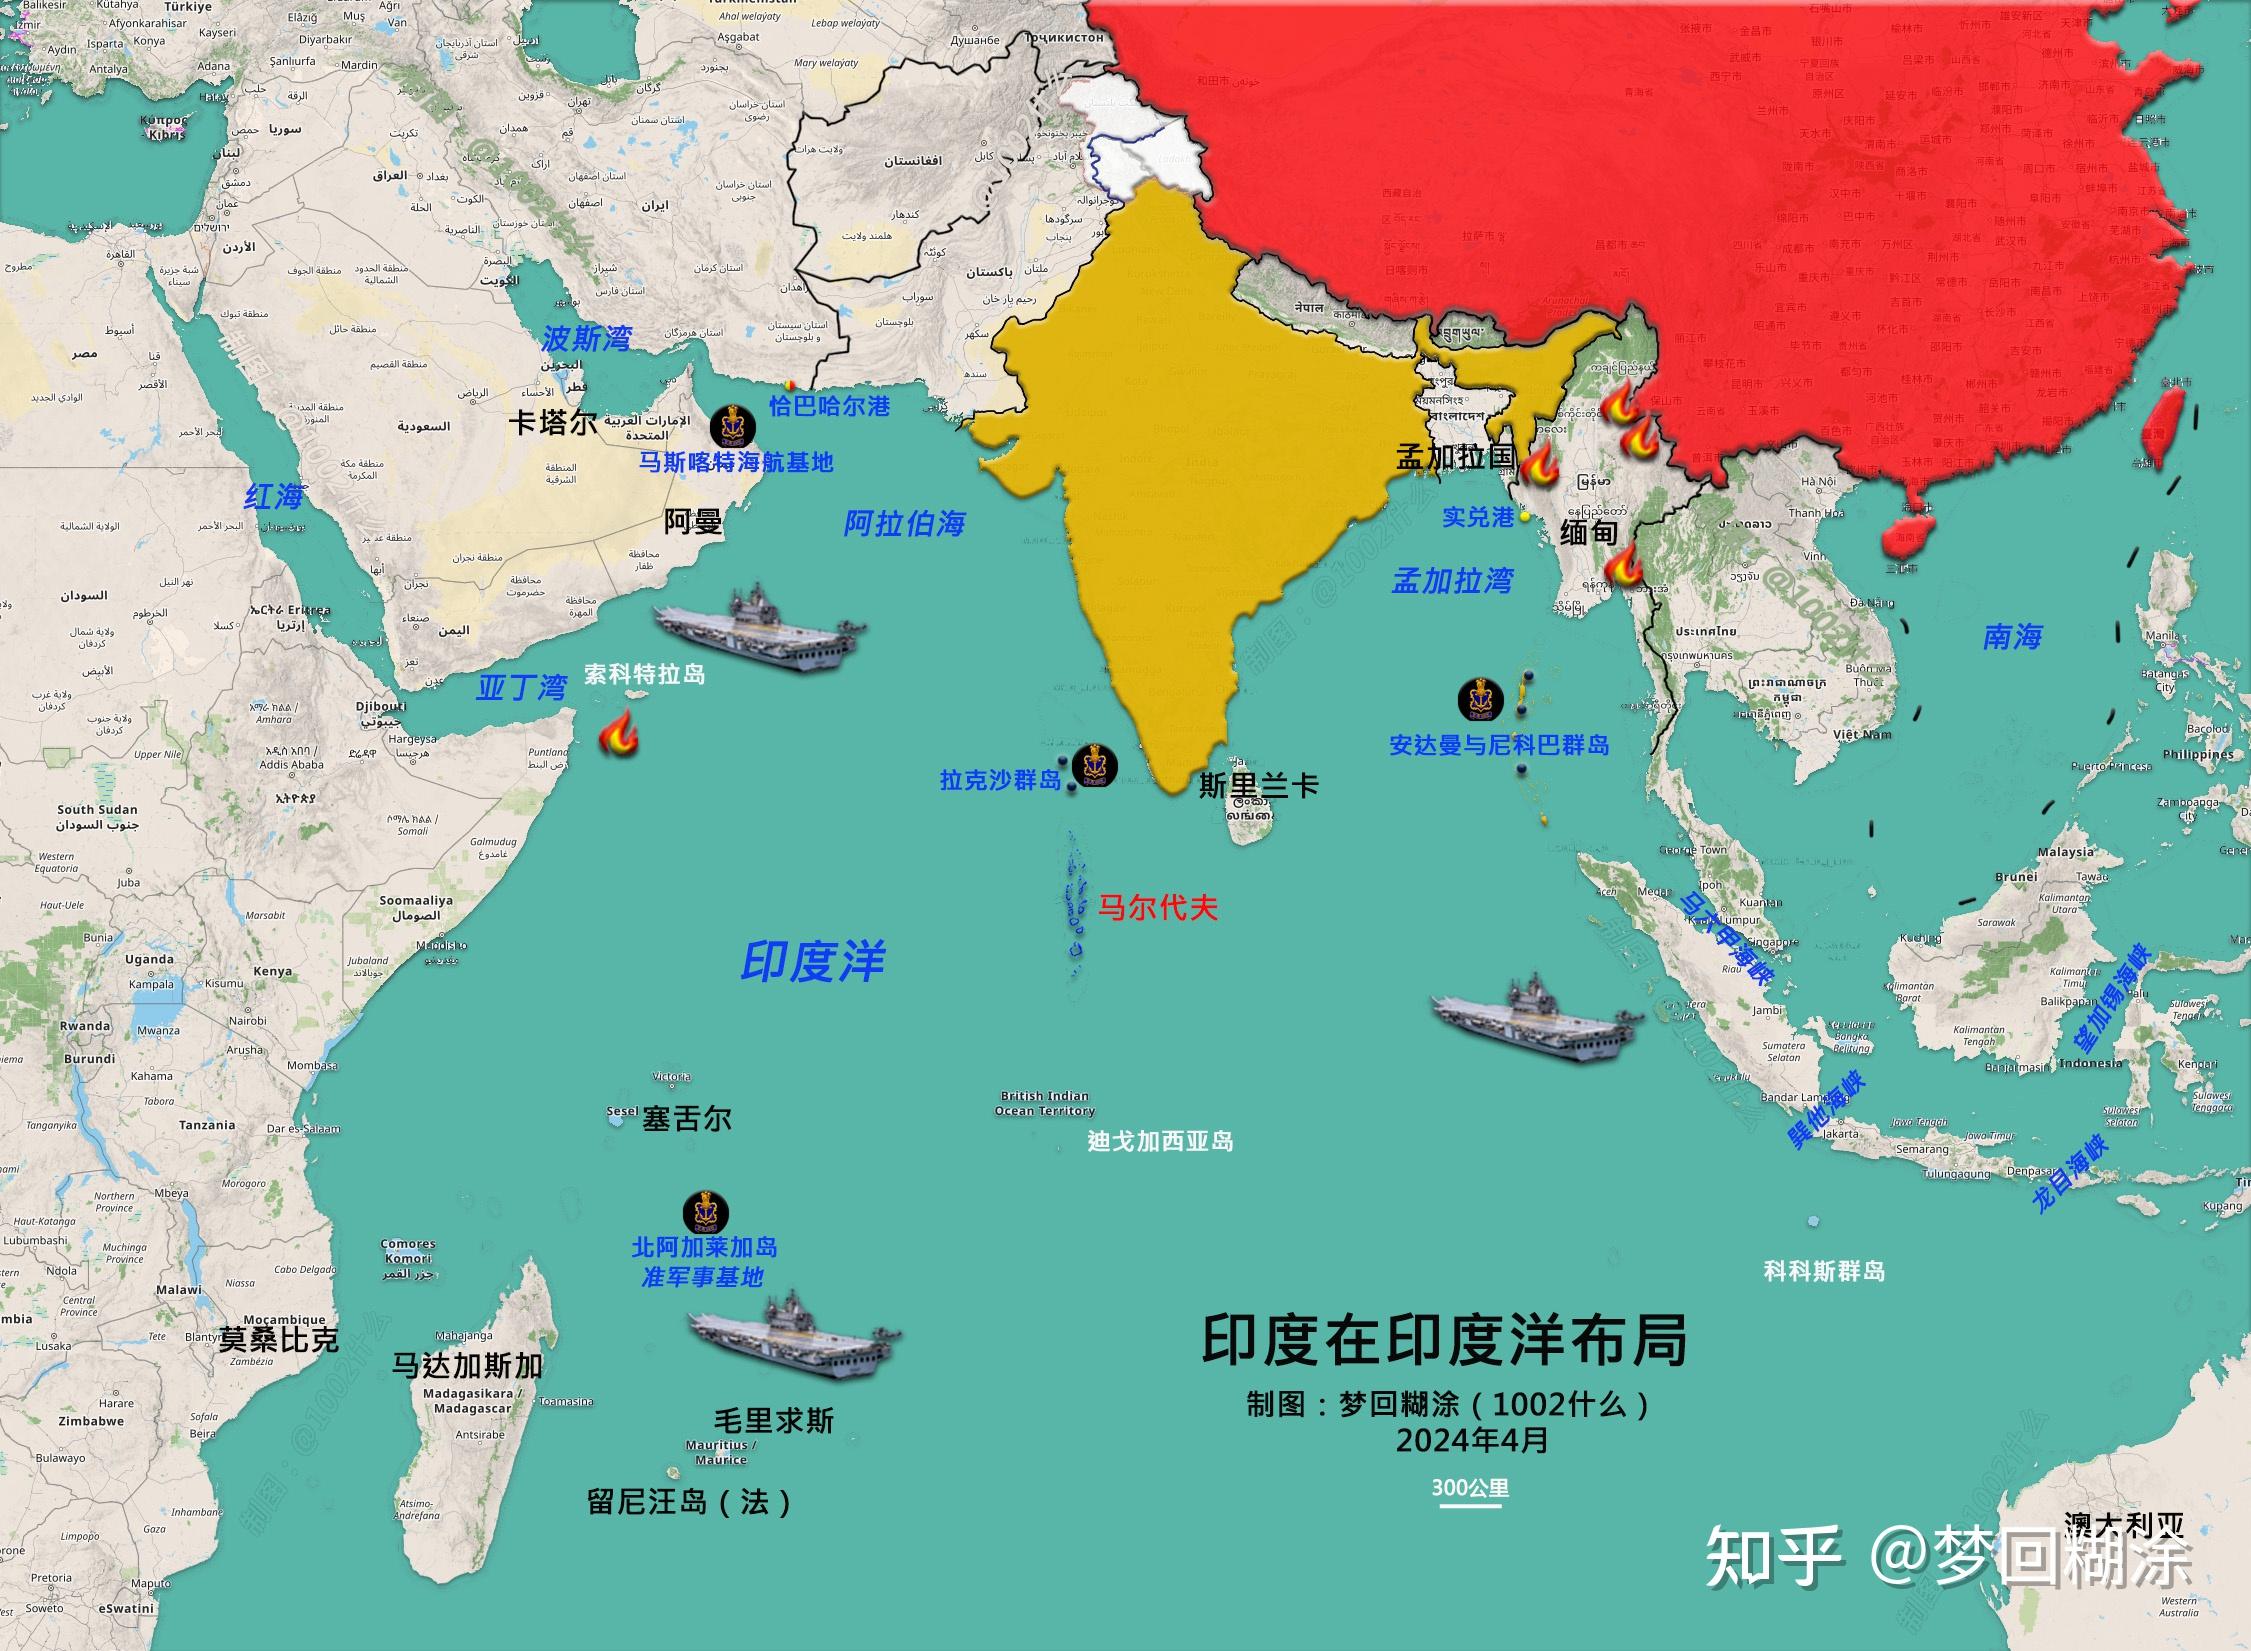 福建舰的海试,以及所谓可能在2030年后进入印度洋对印度本土的威胁